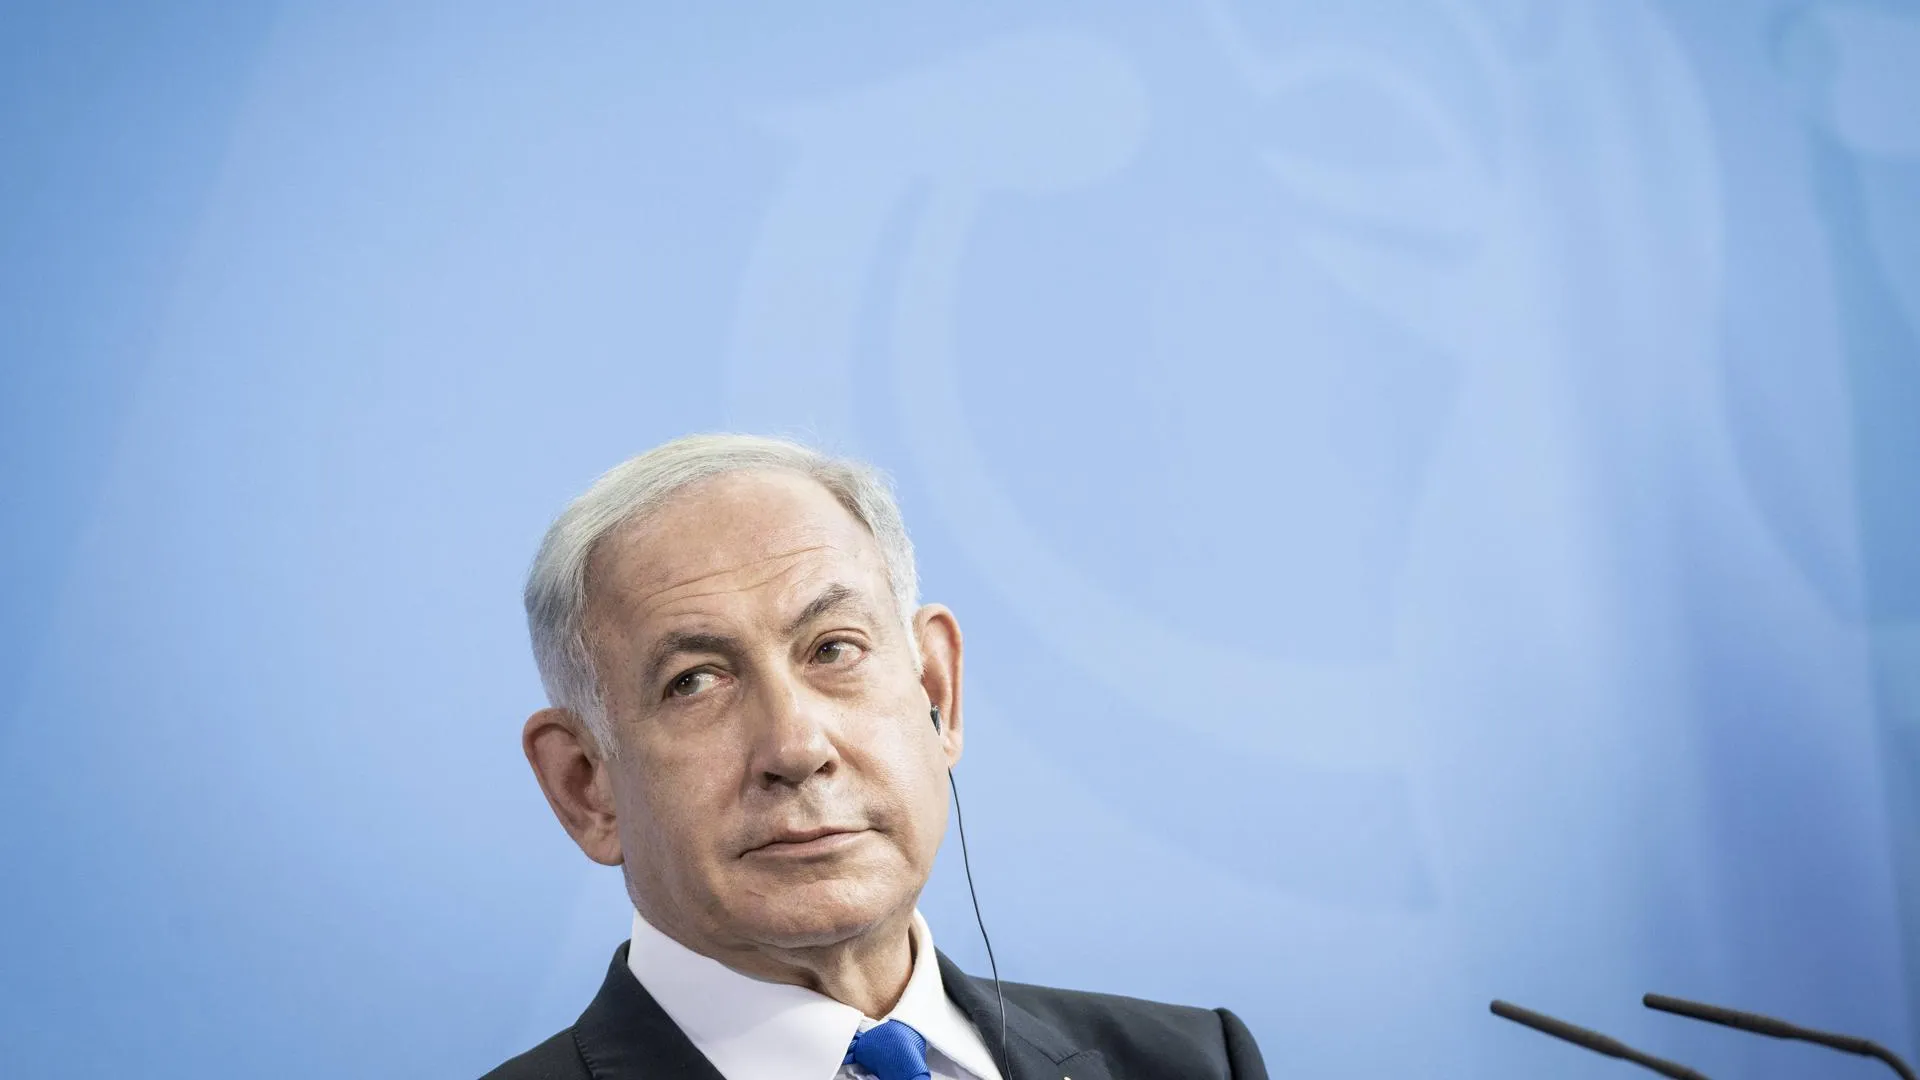 Адская неделя для Нетаньяху. Почему под премьером Израиля зашаталось кресло?